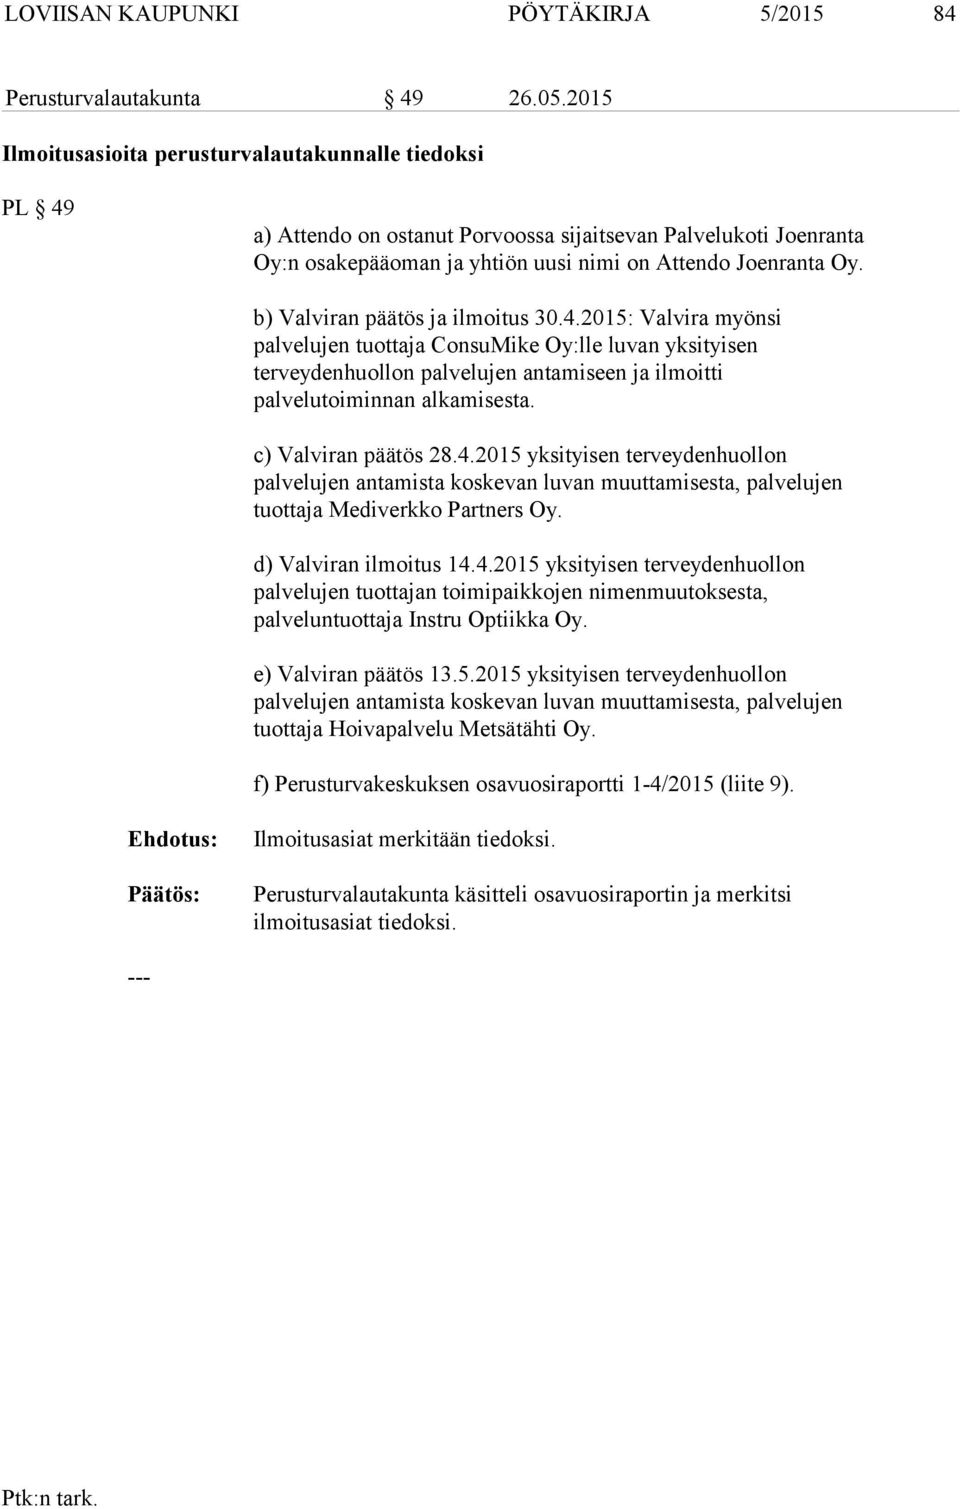 b) Valviran päätös ja ilmoitus 30.4.2015: Valvira myönsi palvelujen tuottaja ConsuMike Oy:lle luvan yksityisen terveydenhuollon palvelujen antamiseen ja ilmoitti palvelutoiminnan alkamisesta.